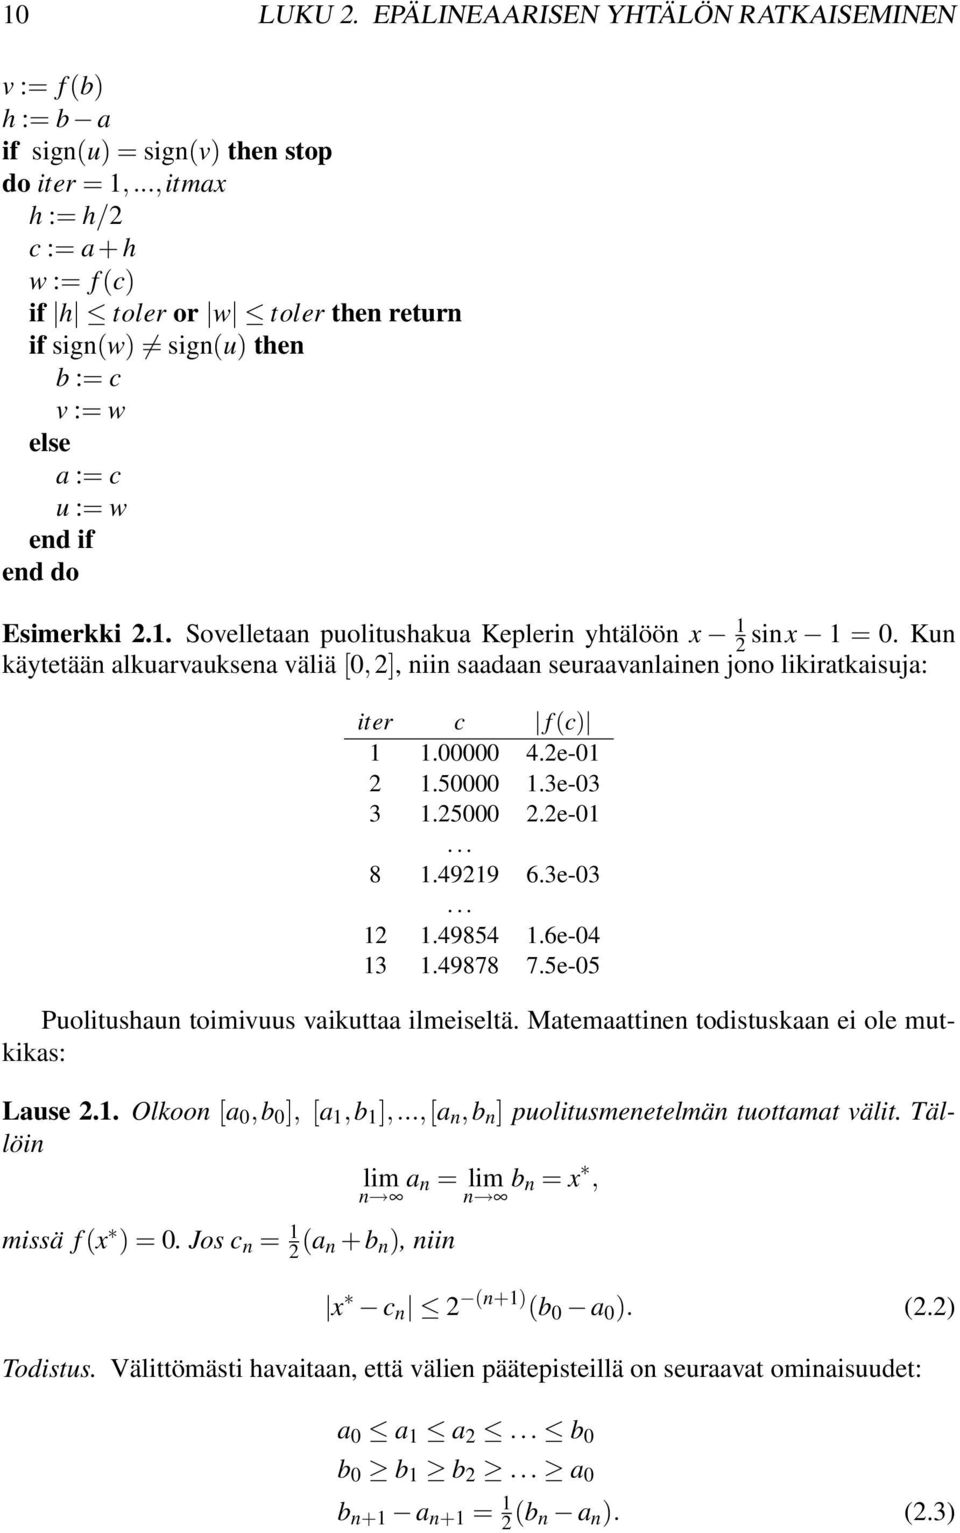 Sovelletaan puolitushakua Keplerin yhtälöön x 2 1 sinx 1 = 0. Kun käytetään alkuarvauksena väliä [0,2], niin saadaan seuraavanlainen jono likiratkaisuja: iter c f (c) 1 1.00000 4.2e-01 2 1.50000 1.